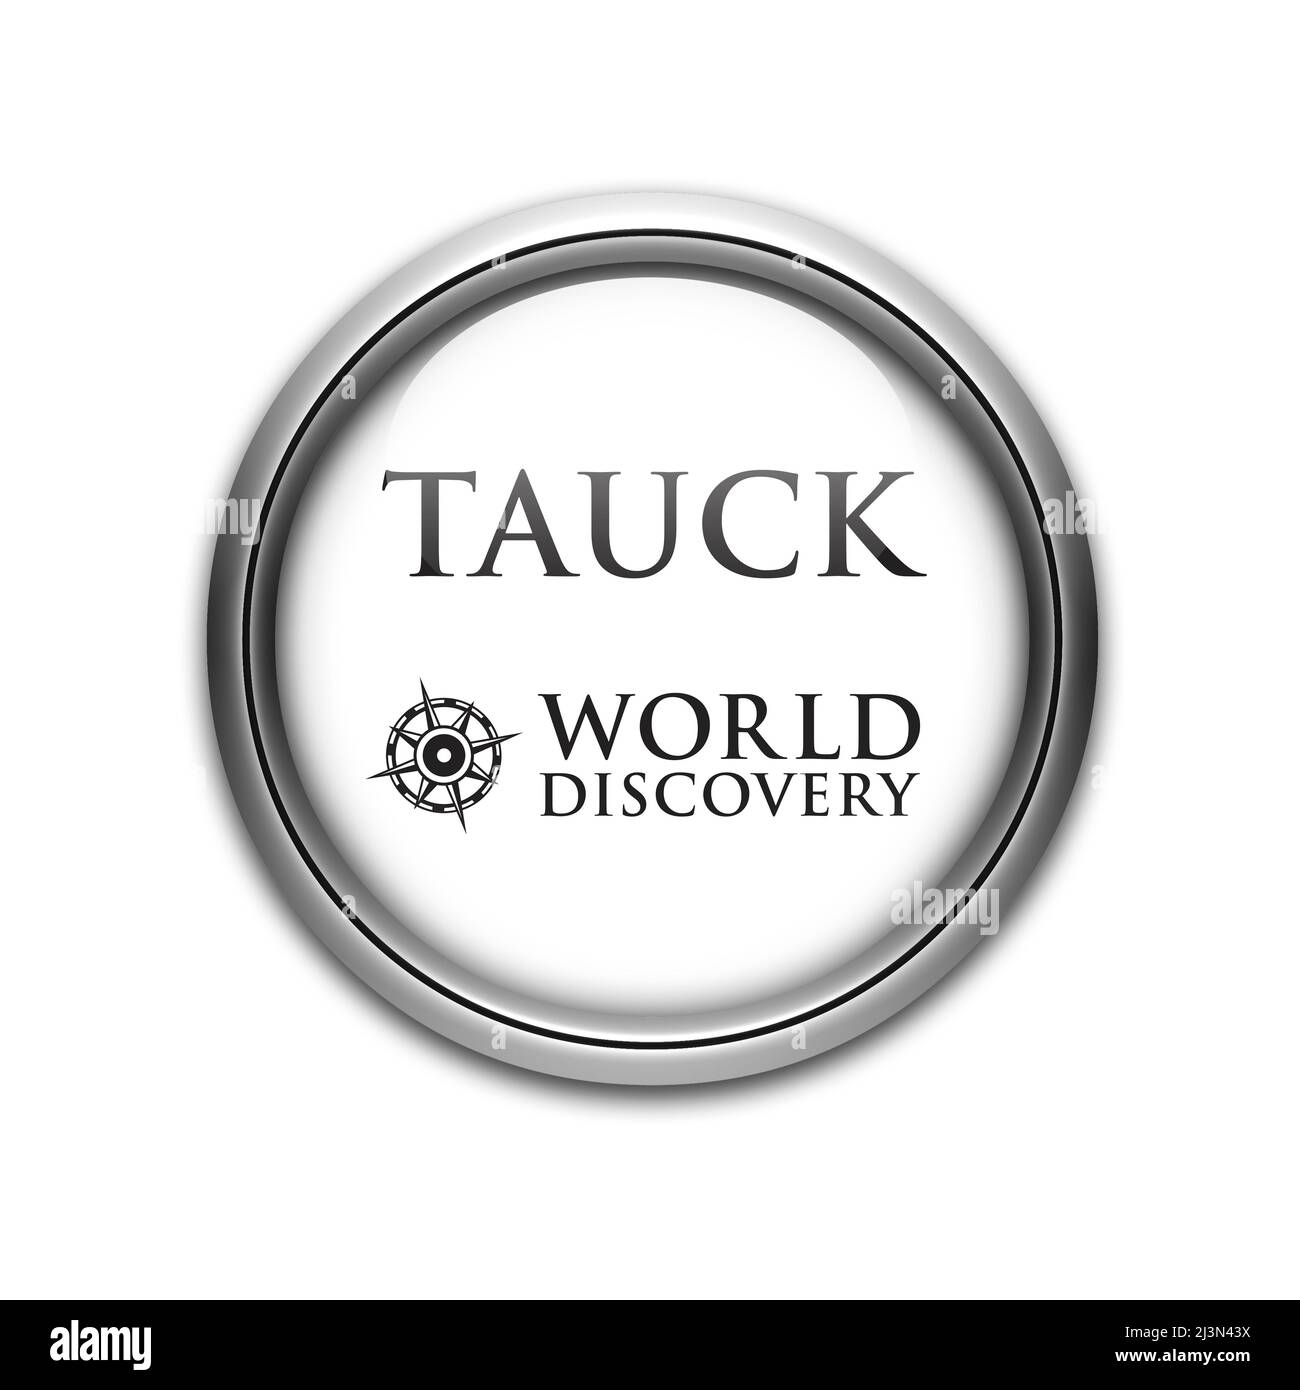 Tauck logo Stock Photo